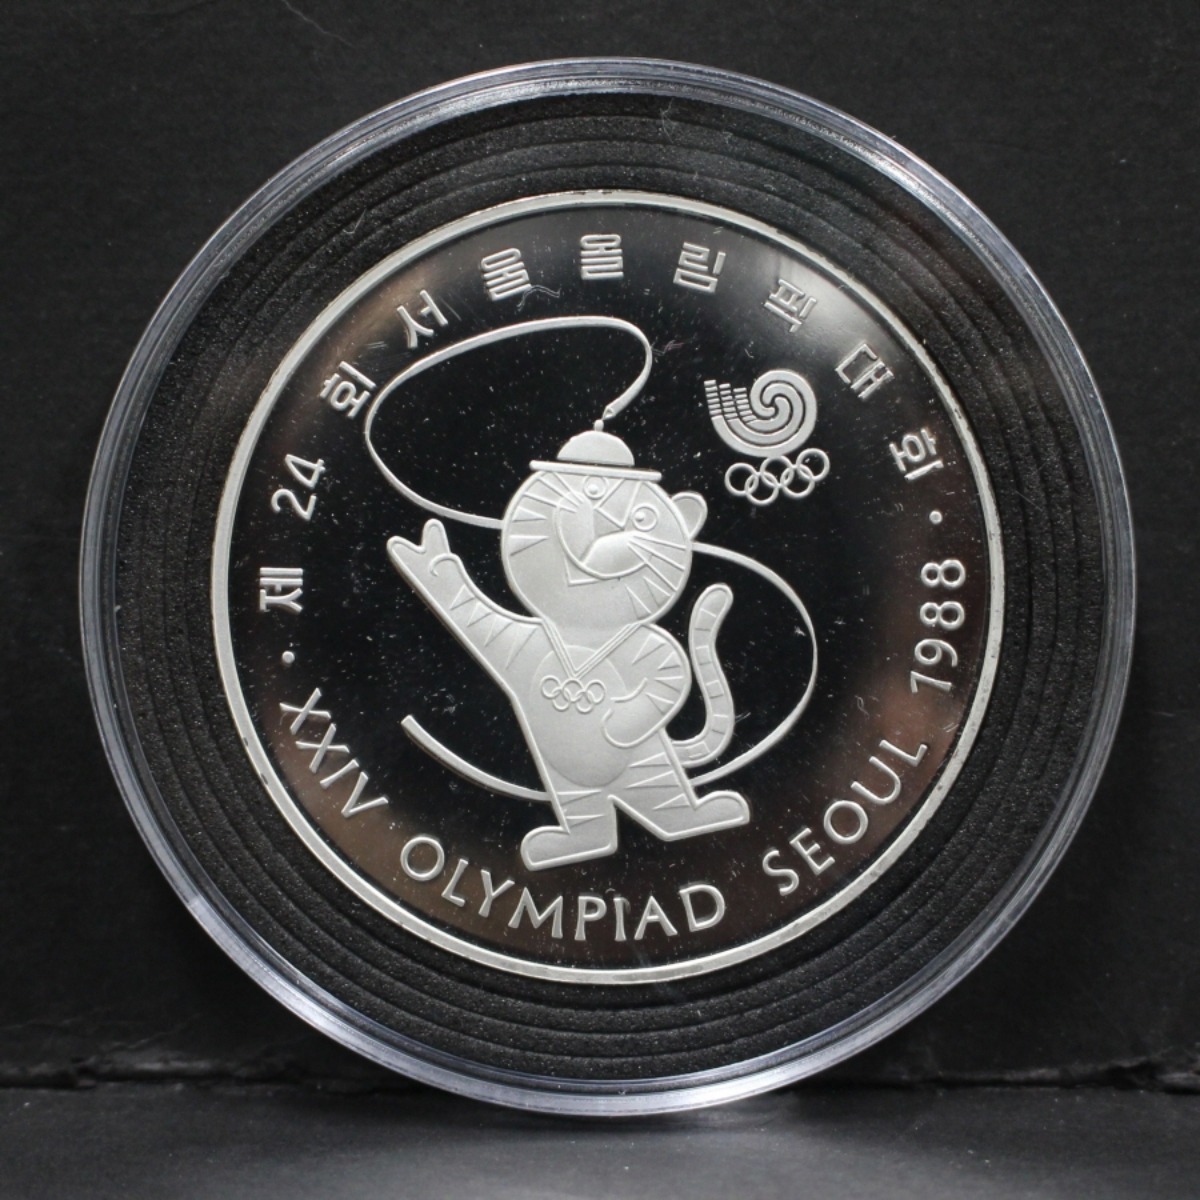 한국조폐공사 1988년 서울 올림픽 공식 기념 호돌이 은메달 (상태 최상급)